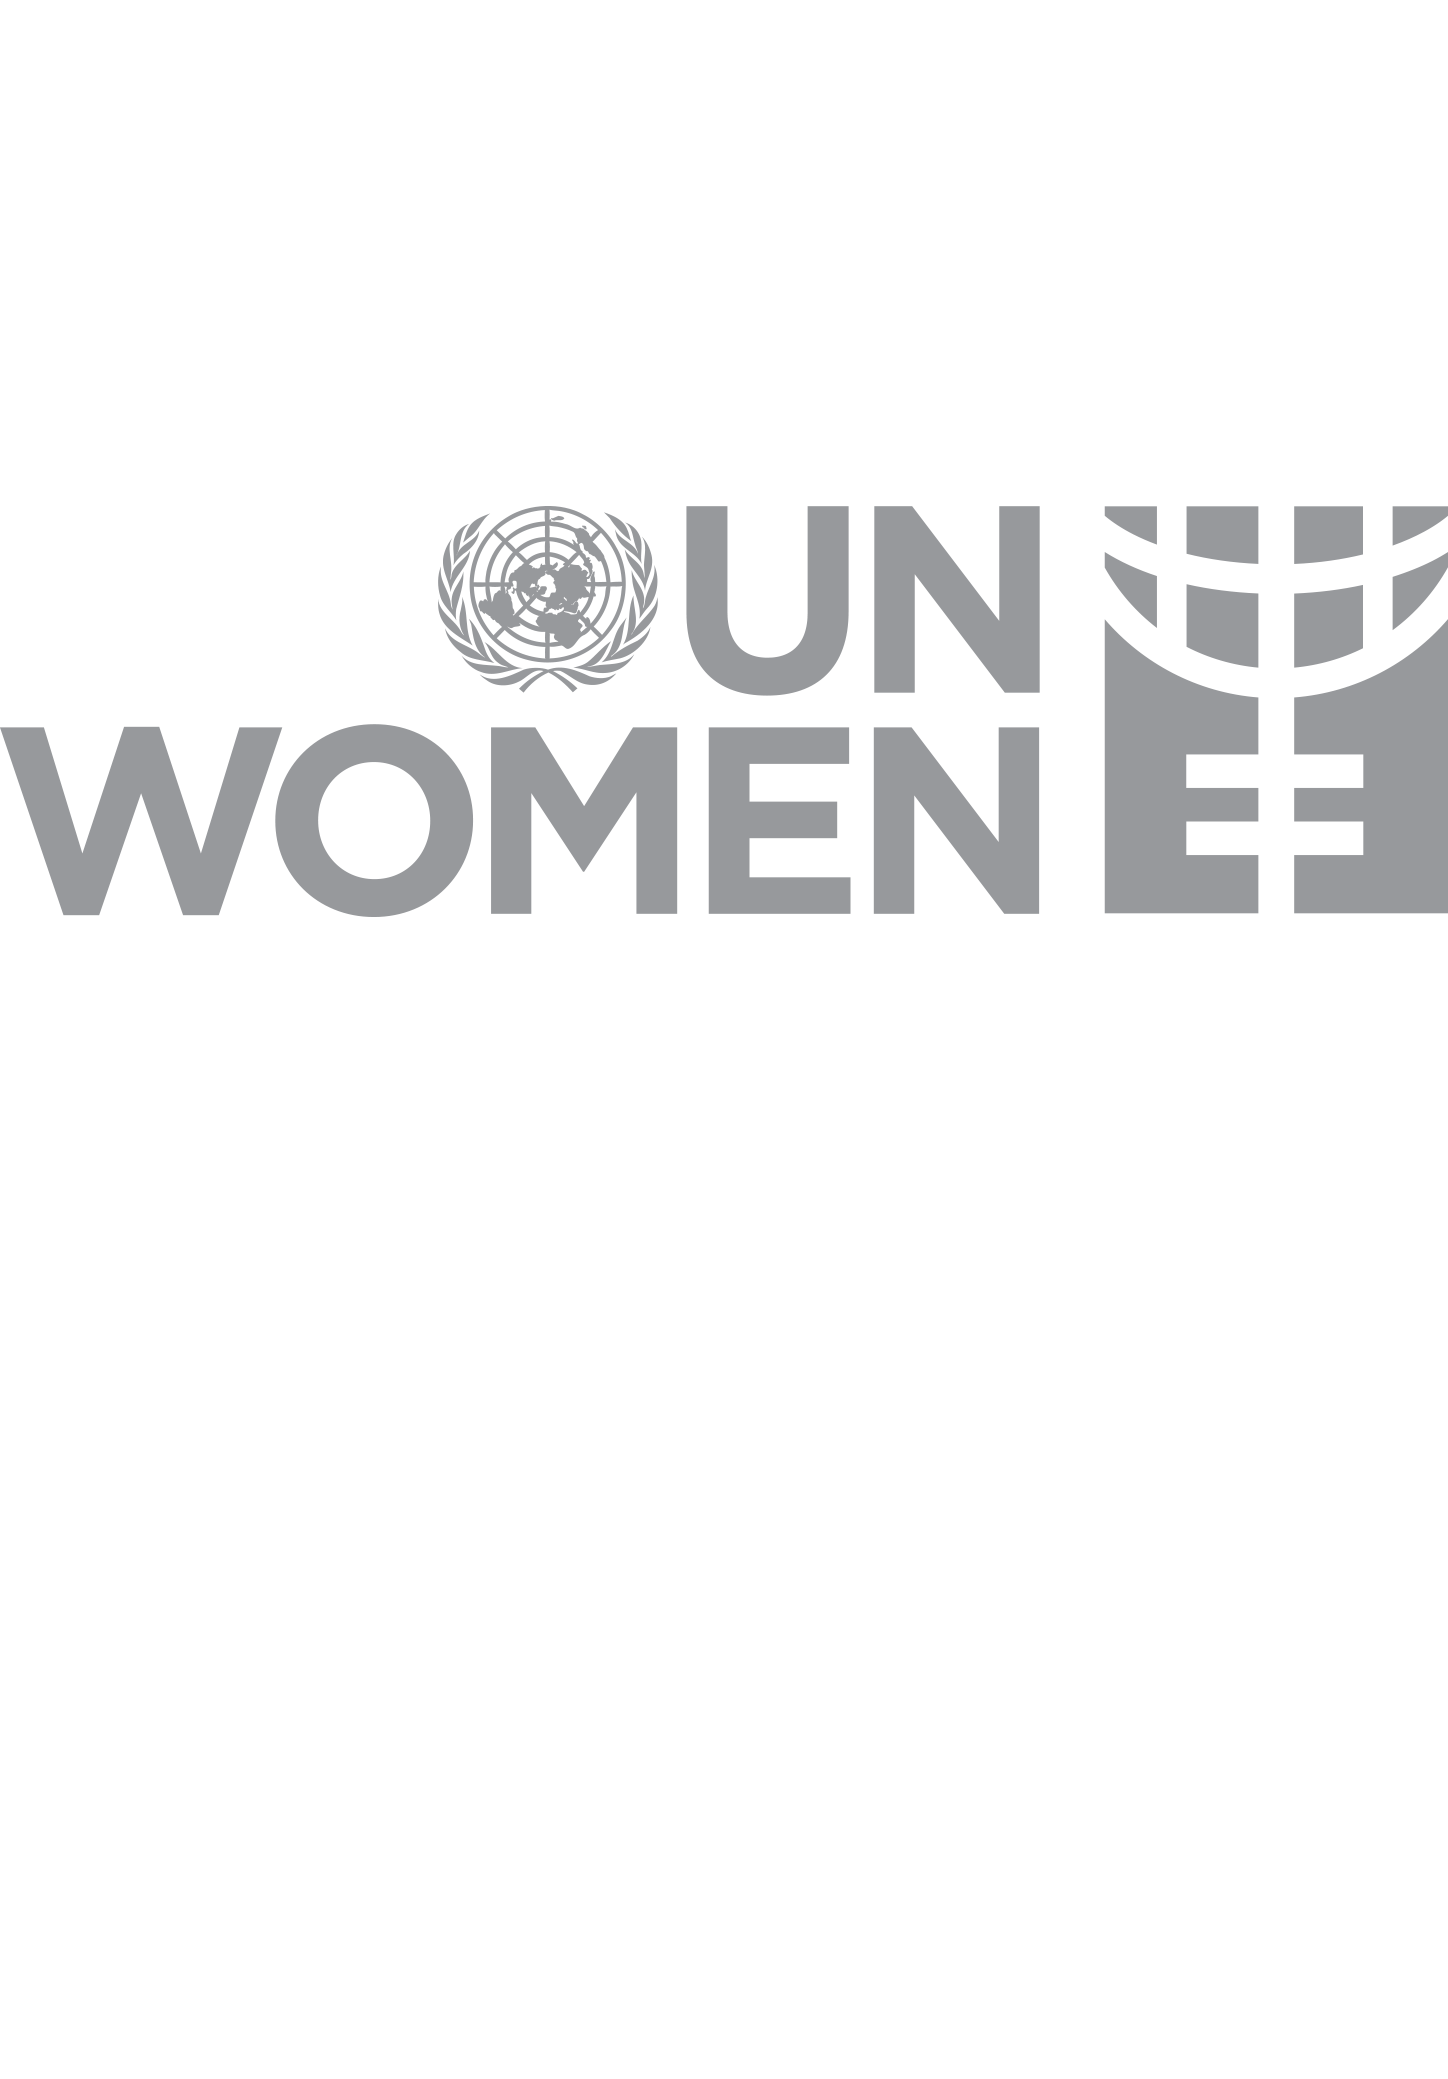 UN-WOMEN